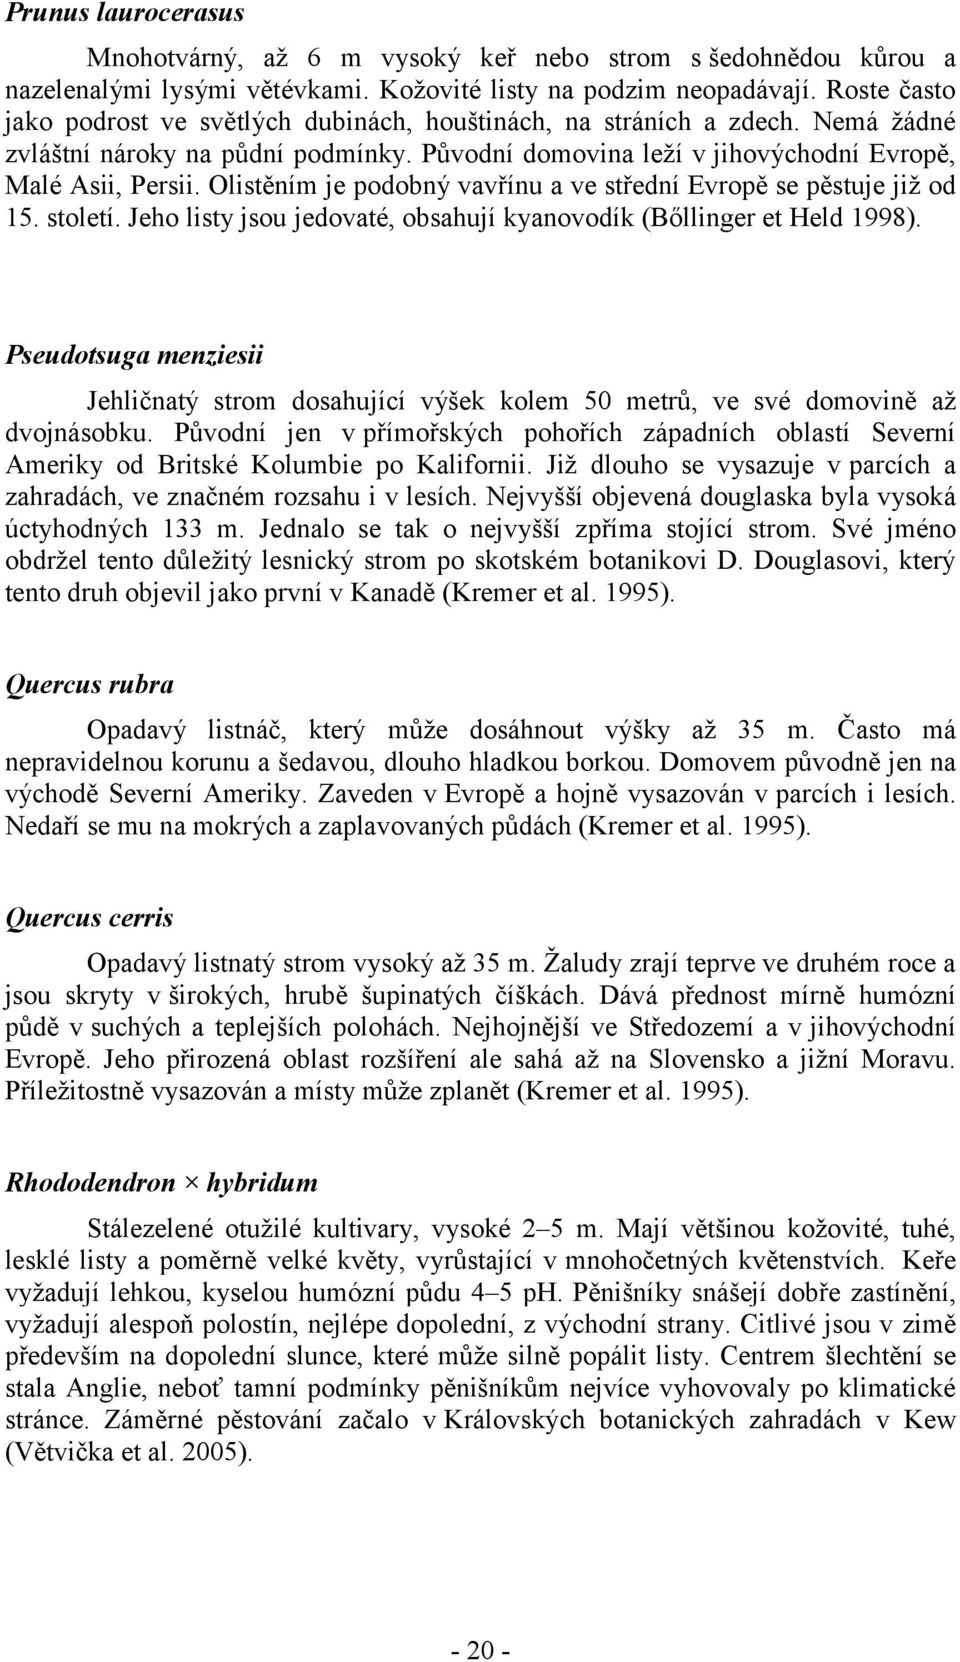 Olistěním je podobný vavřínu a ve střední Evropě se pěstuje již od 15. století. Jeho listy jsou jedovaté, obsahují kyanovodík (Bőllinger et Held 1998).